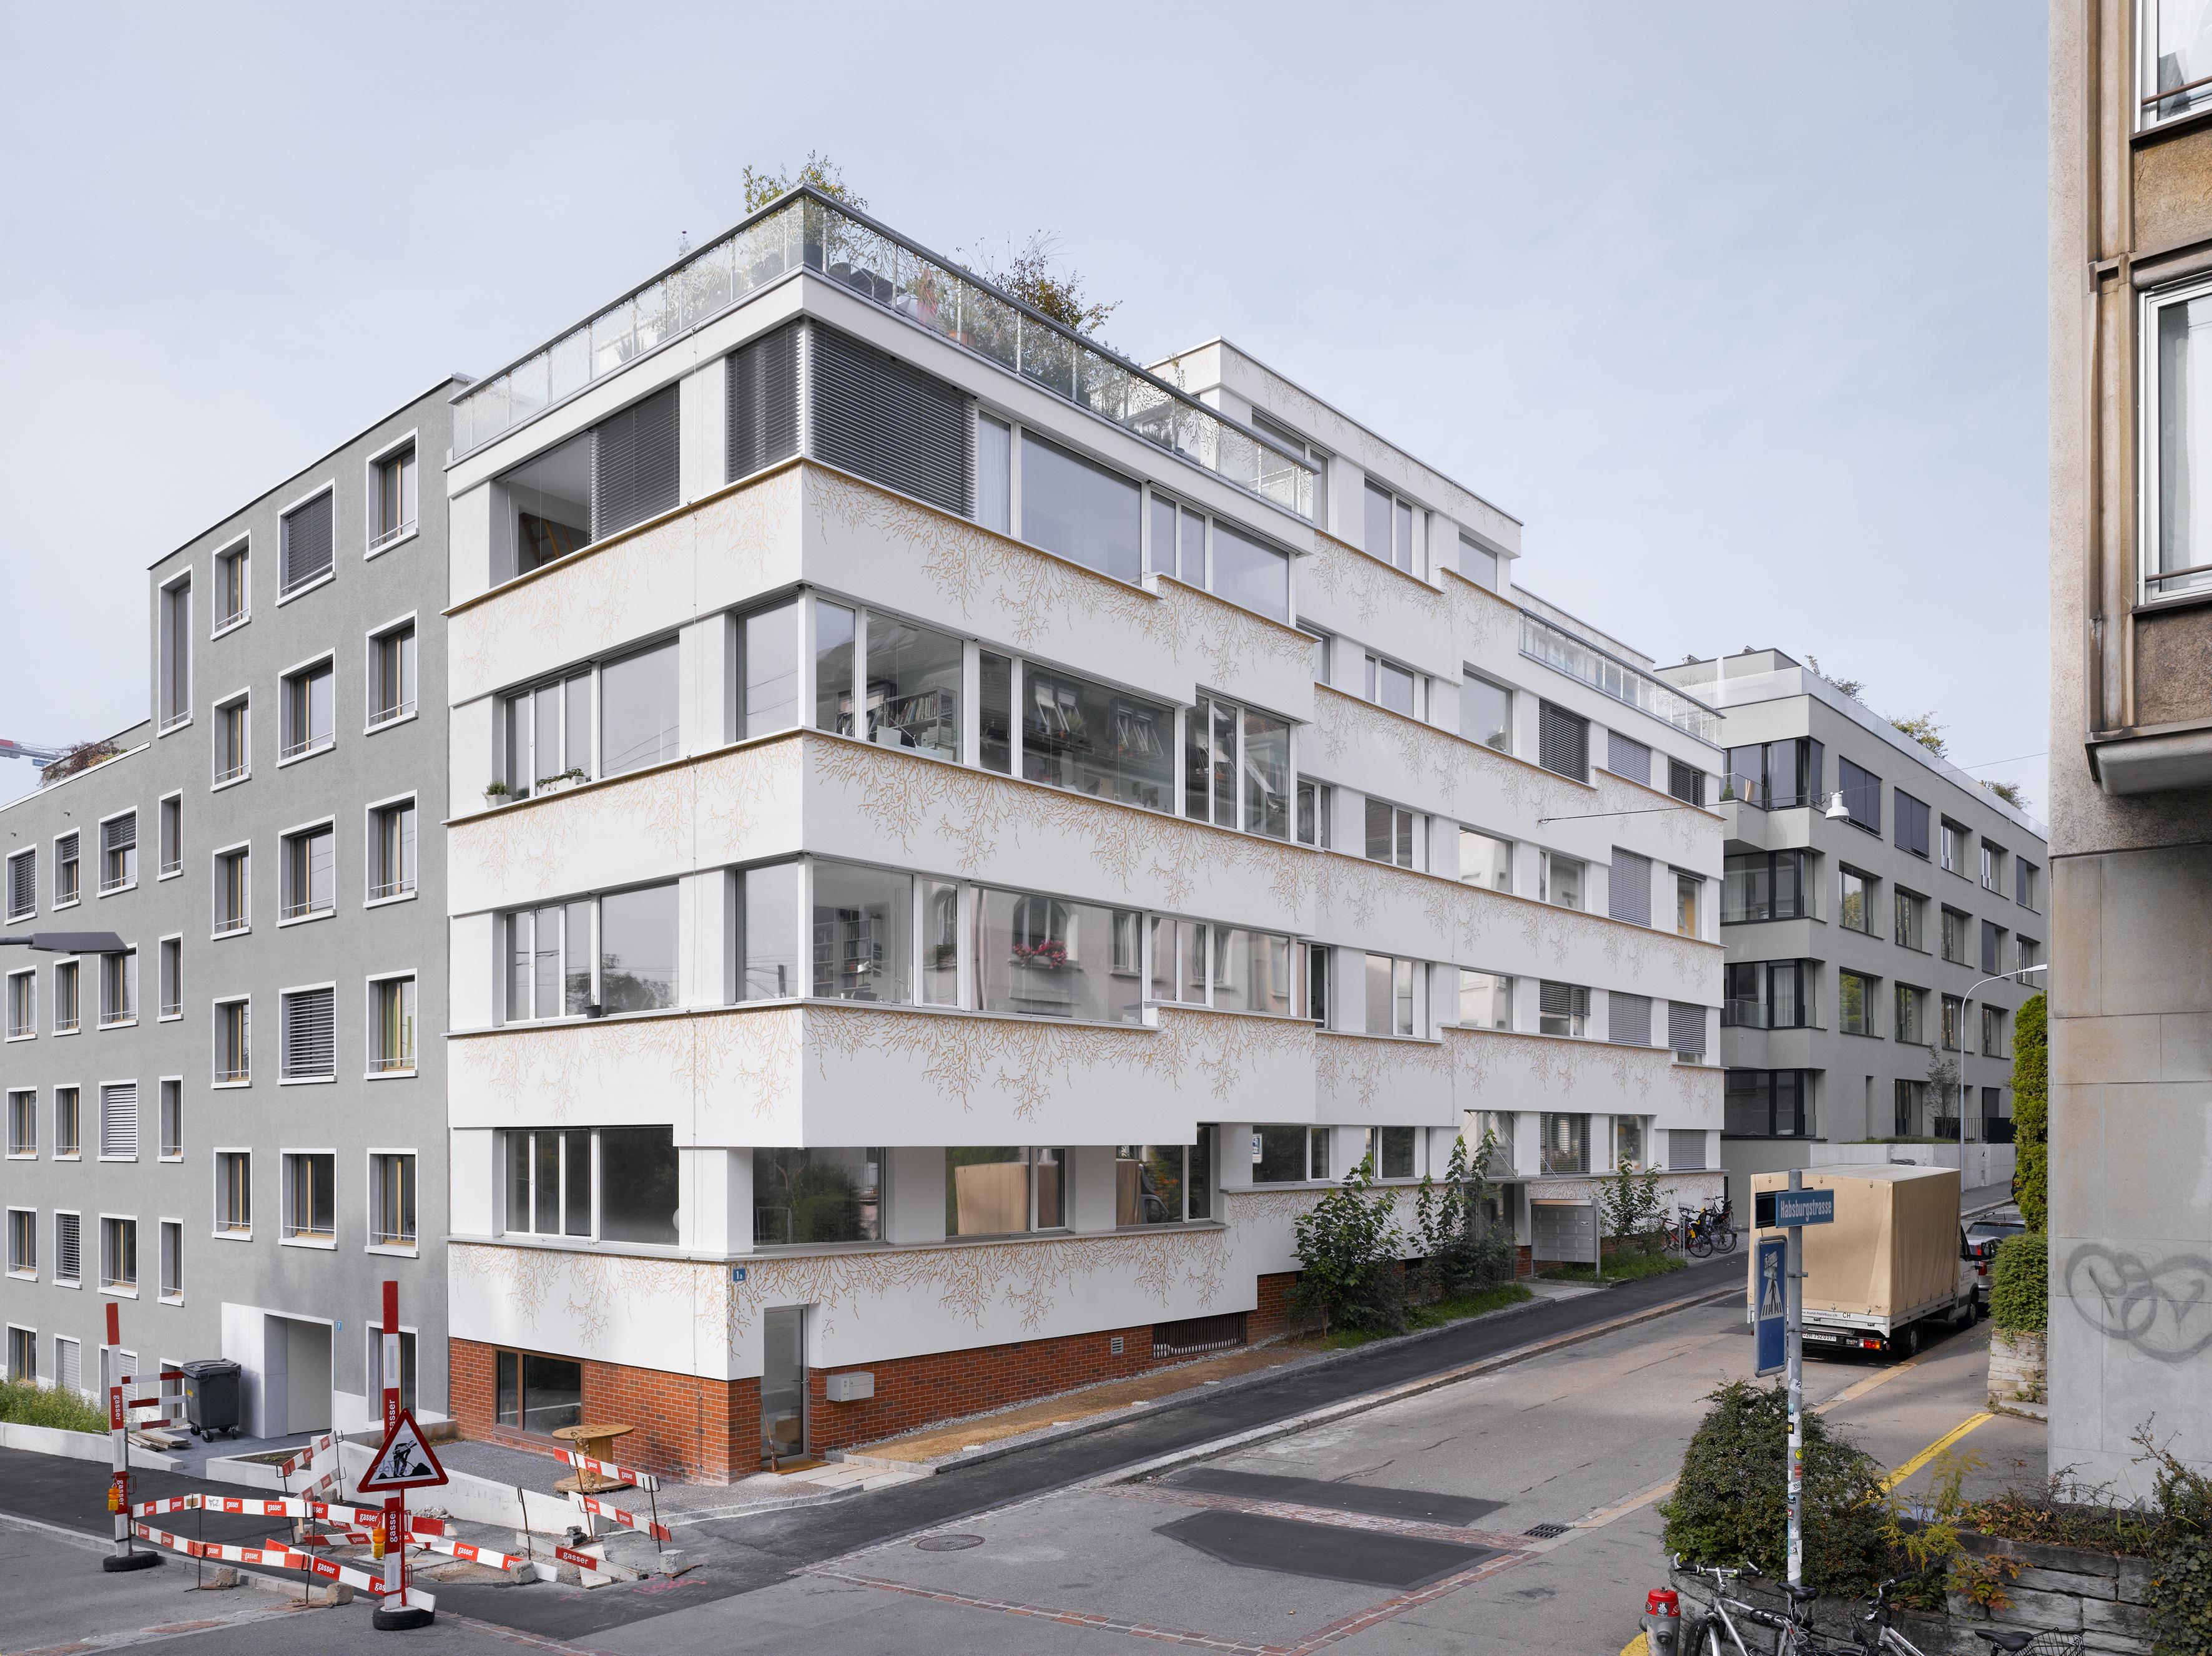  Architektur-Reportage Wipkingen MFH: Die Fassade passt sich an die umliegenden Häuserblöcke an